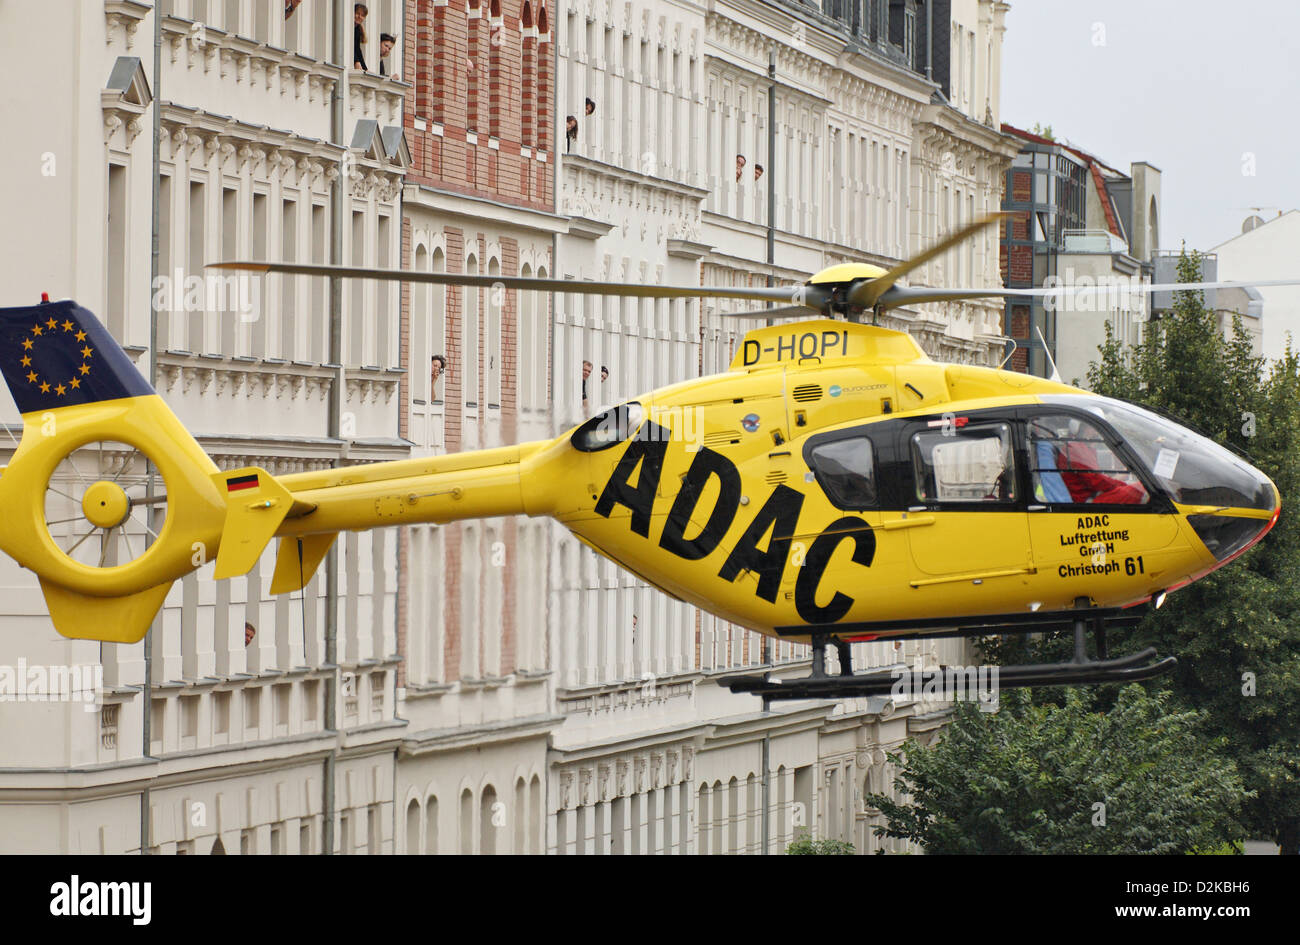 Leipzig, Deutschland, ADAC Rettung Hubschrauber Christoph 61 in der  Innenstadt von Stockfotografie - Alamy